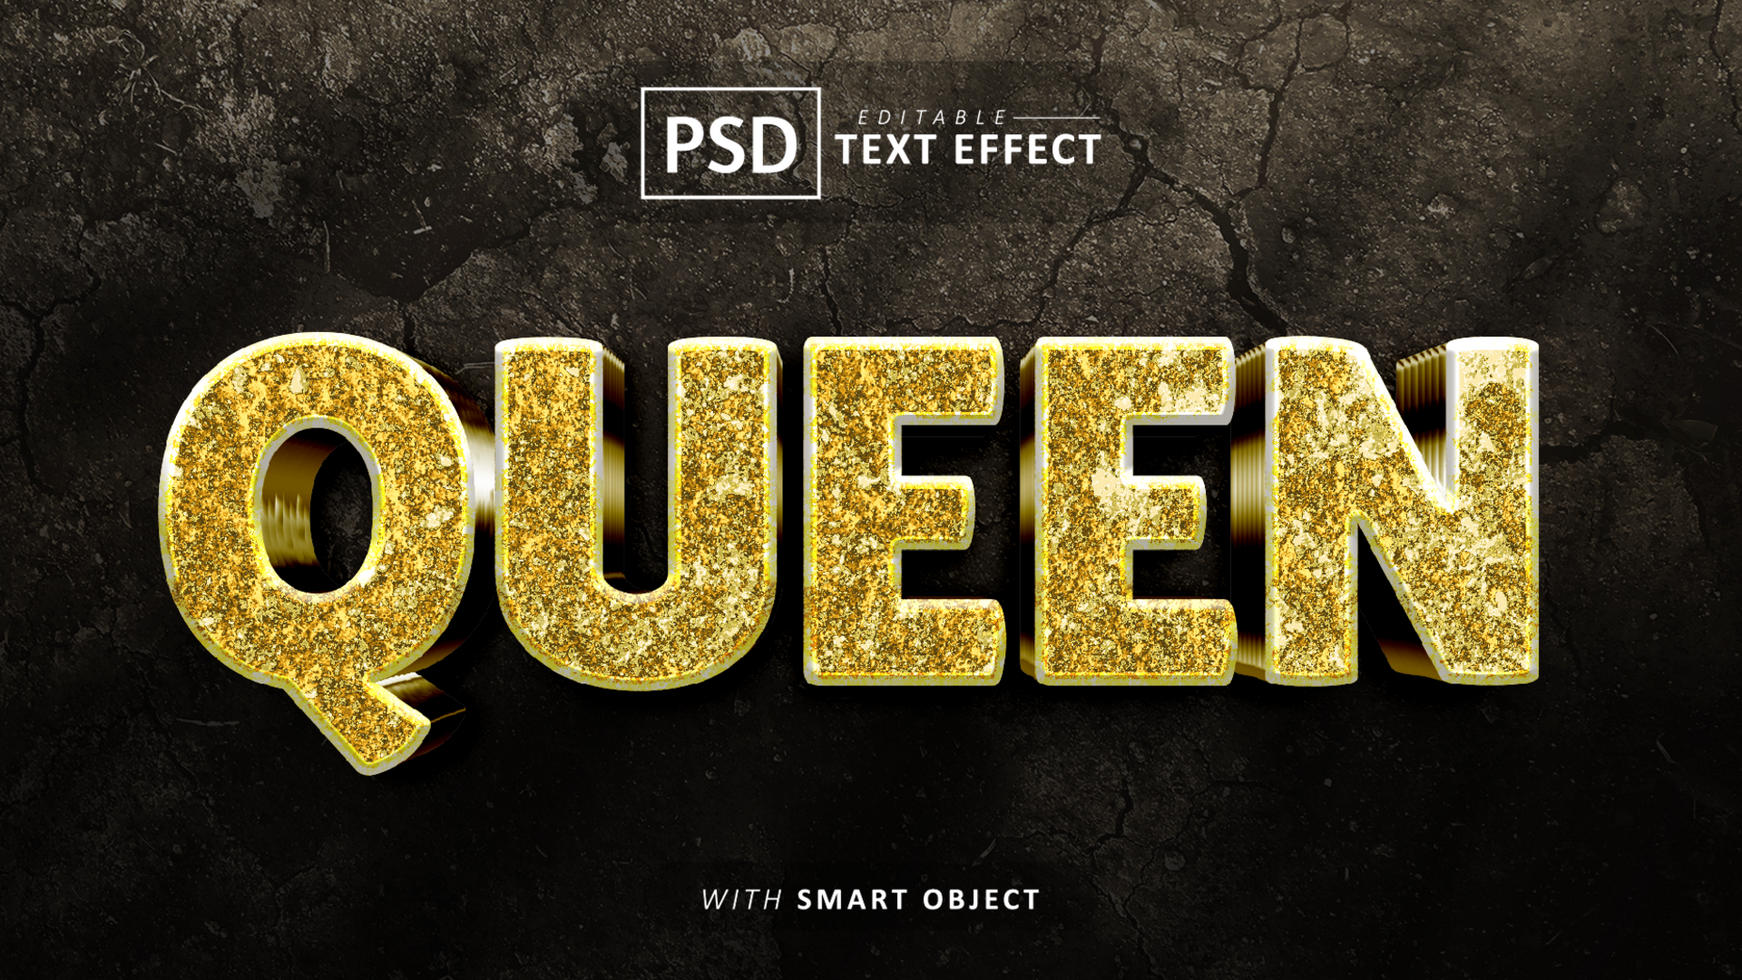 Queen text effect editable psd